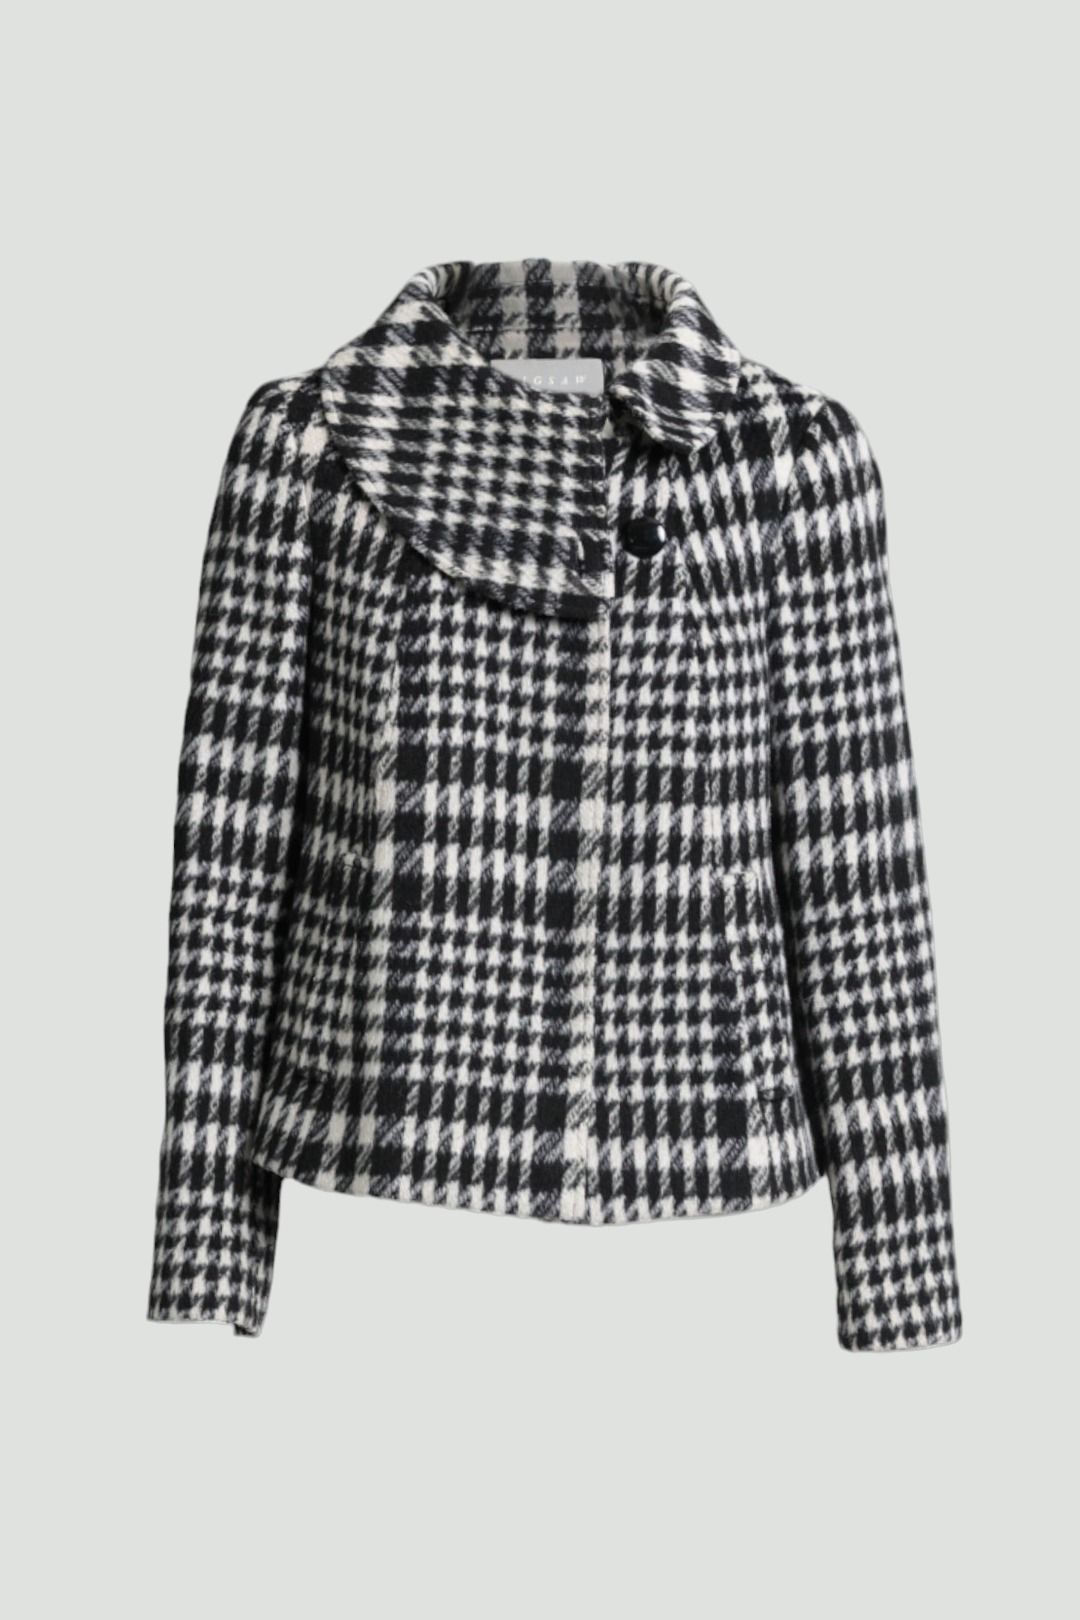 Jigsaw - Black & White Houndstooth Short Swing Coat Jacket